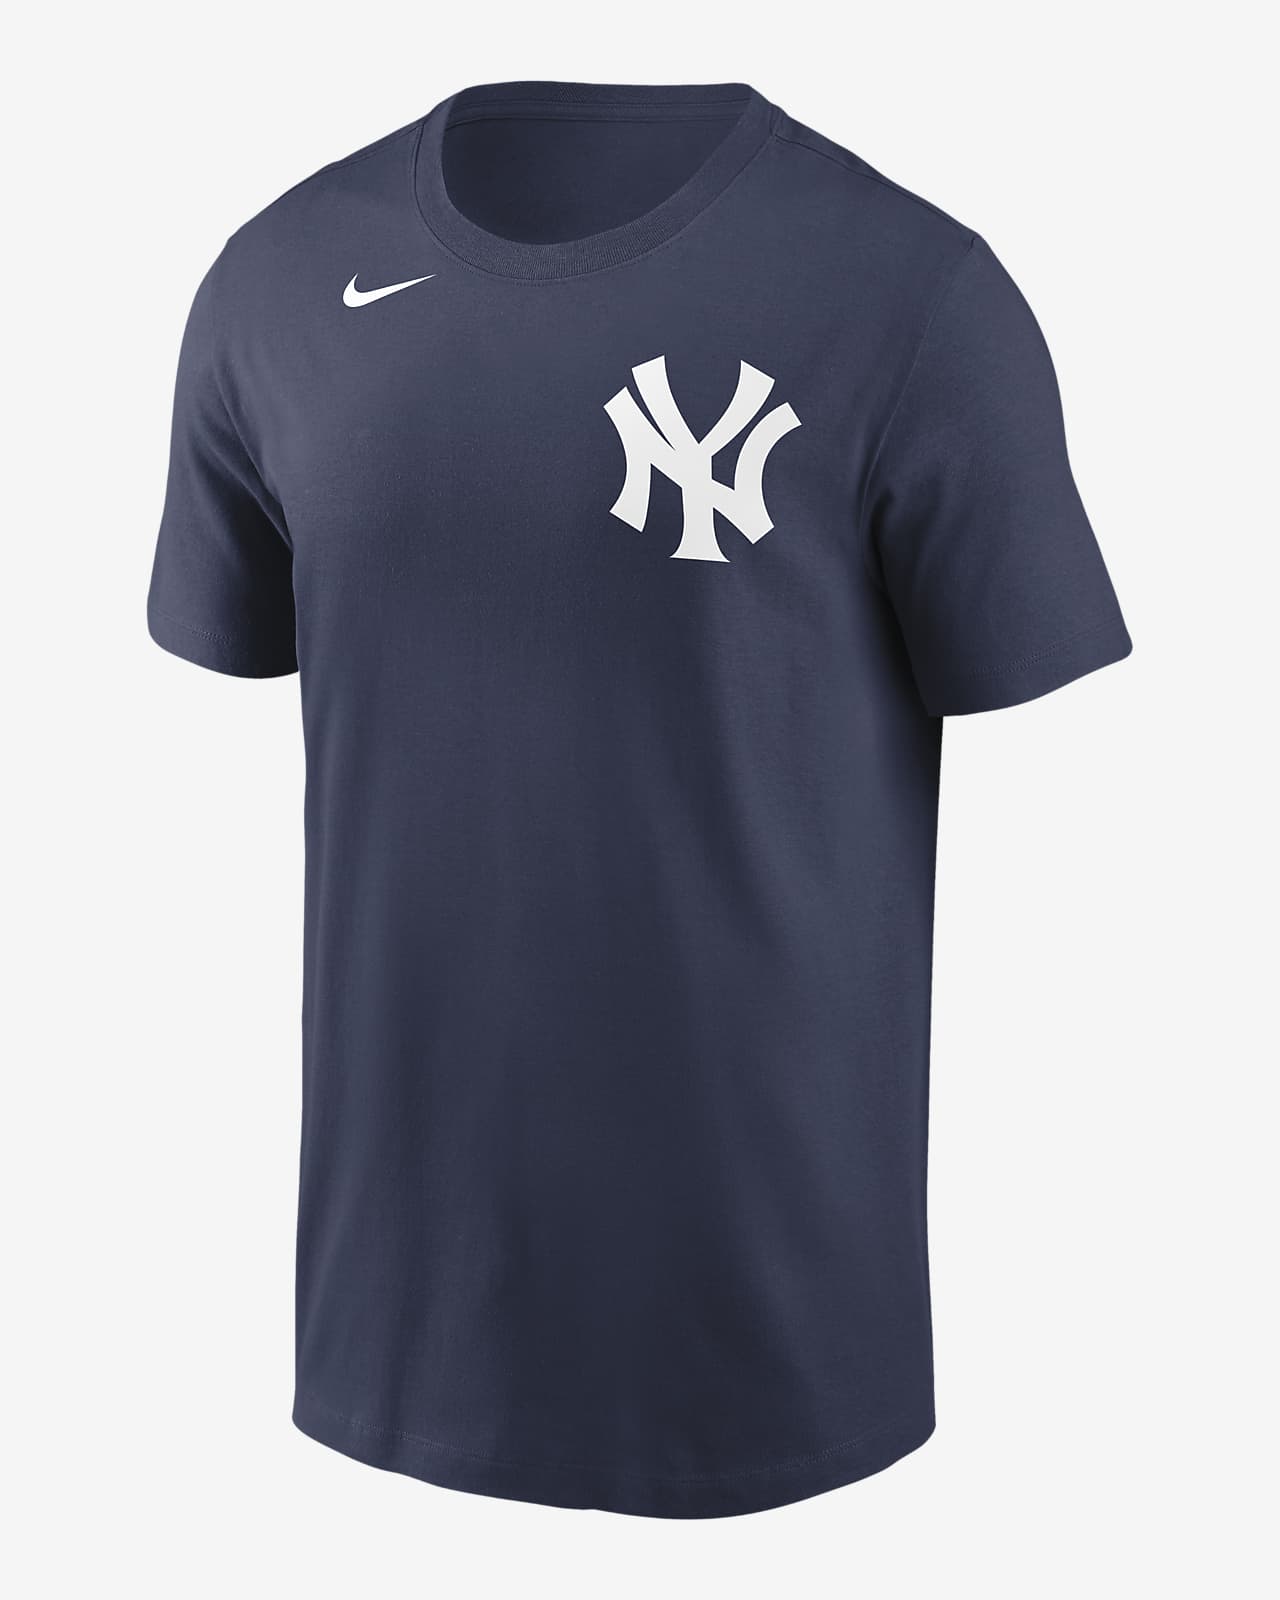 MLB New York Yankees (Luke Voit) Men's T-Shirt